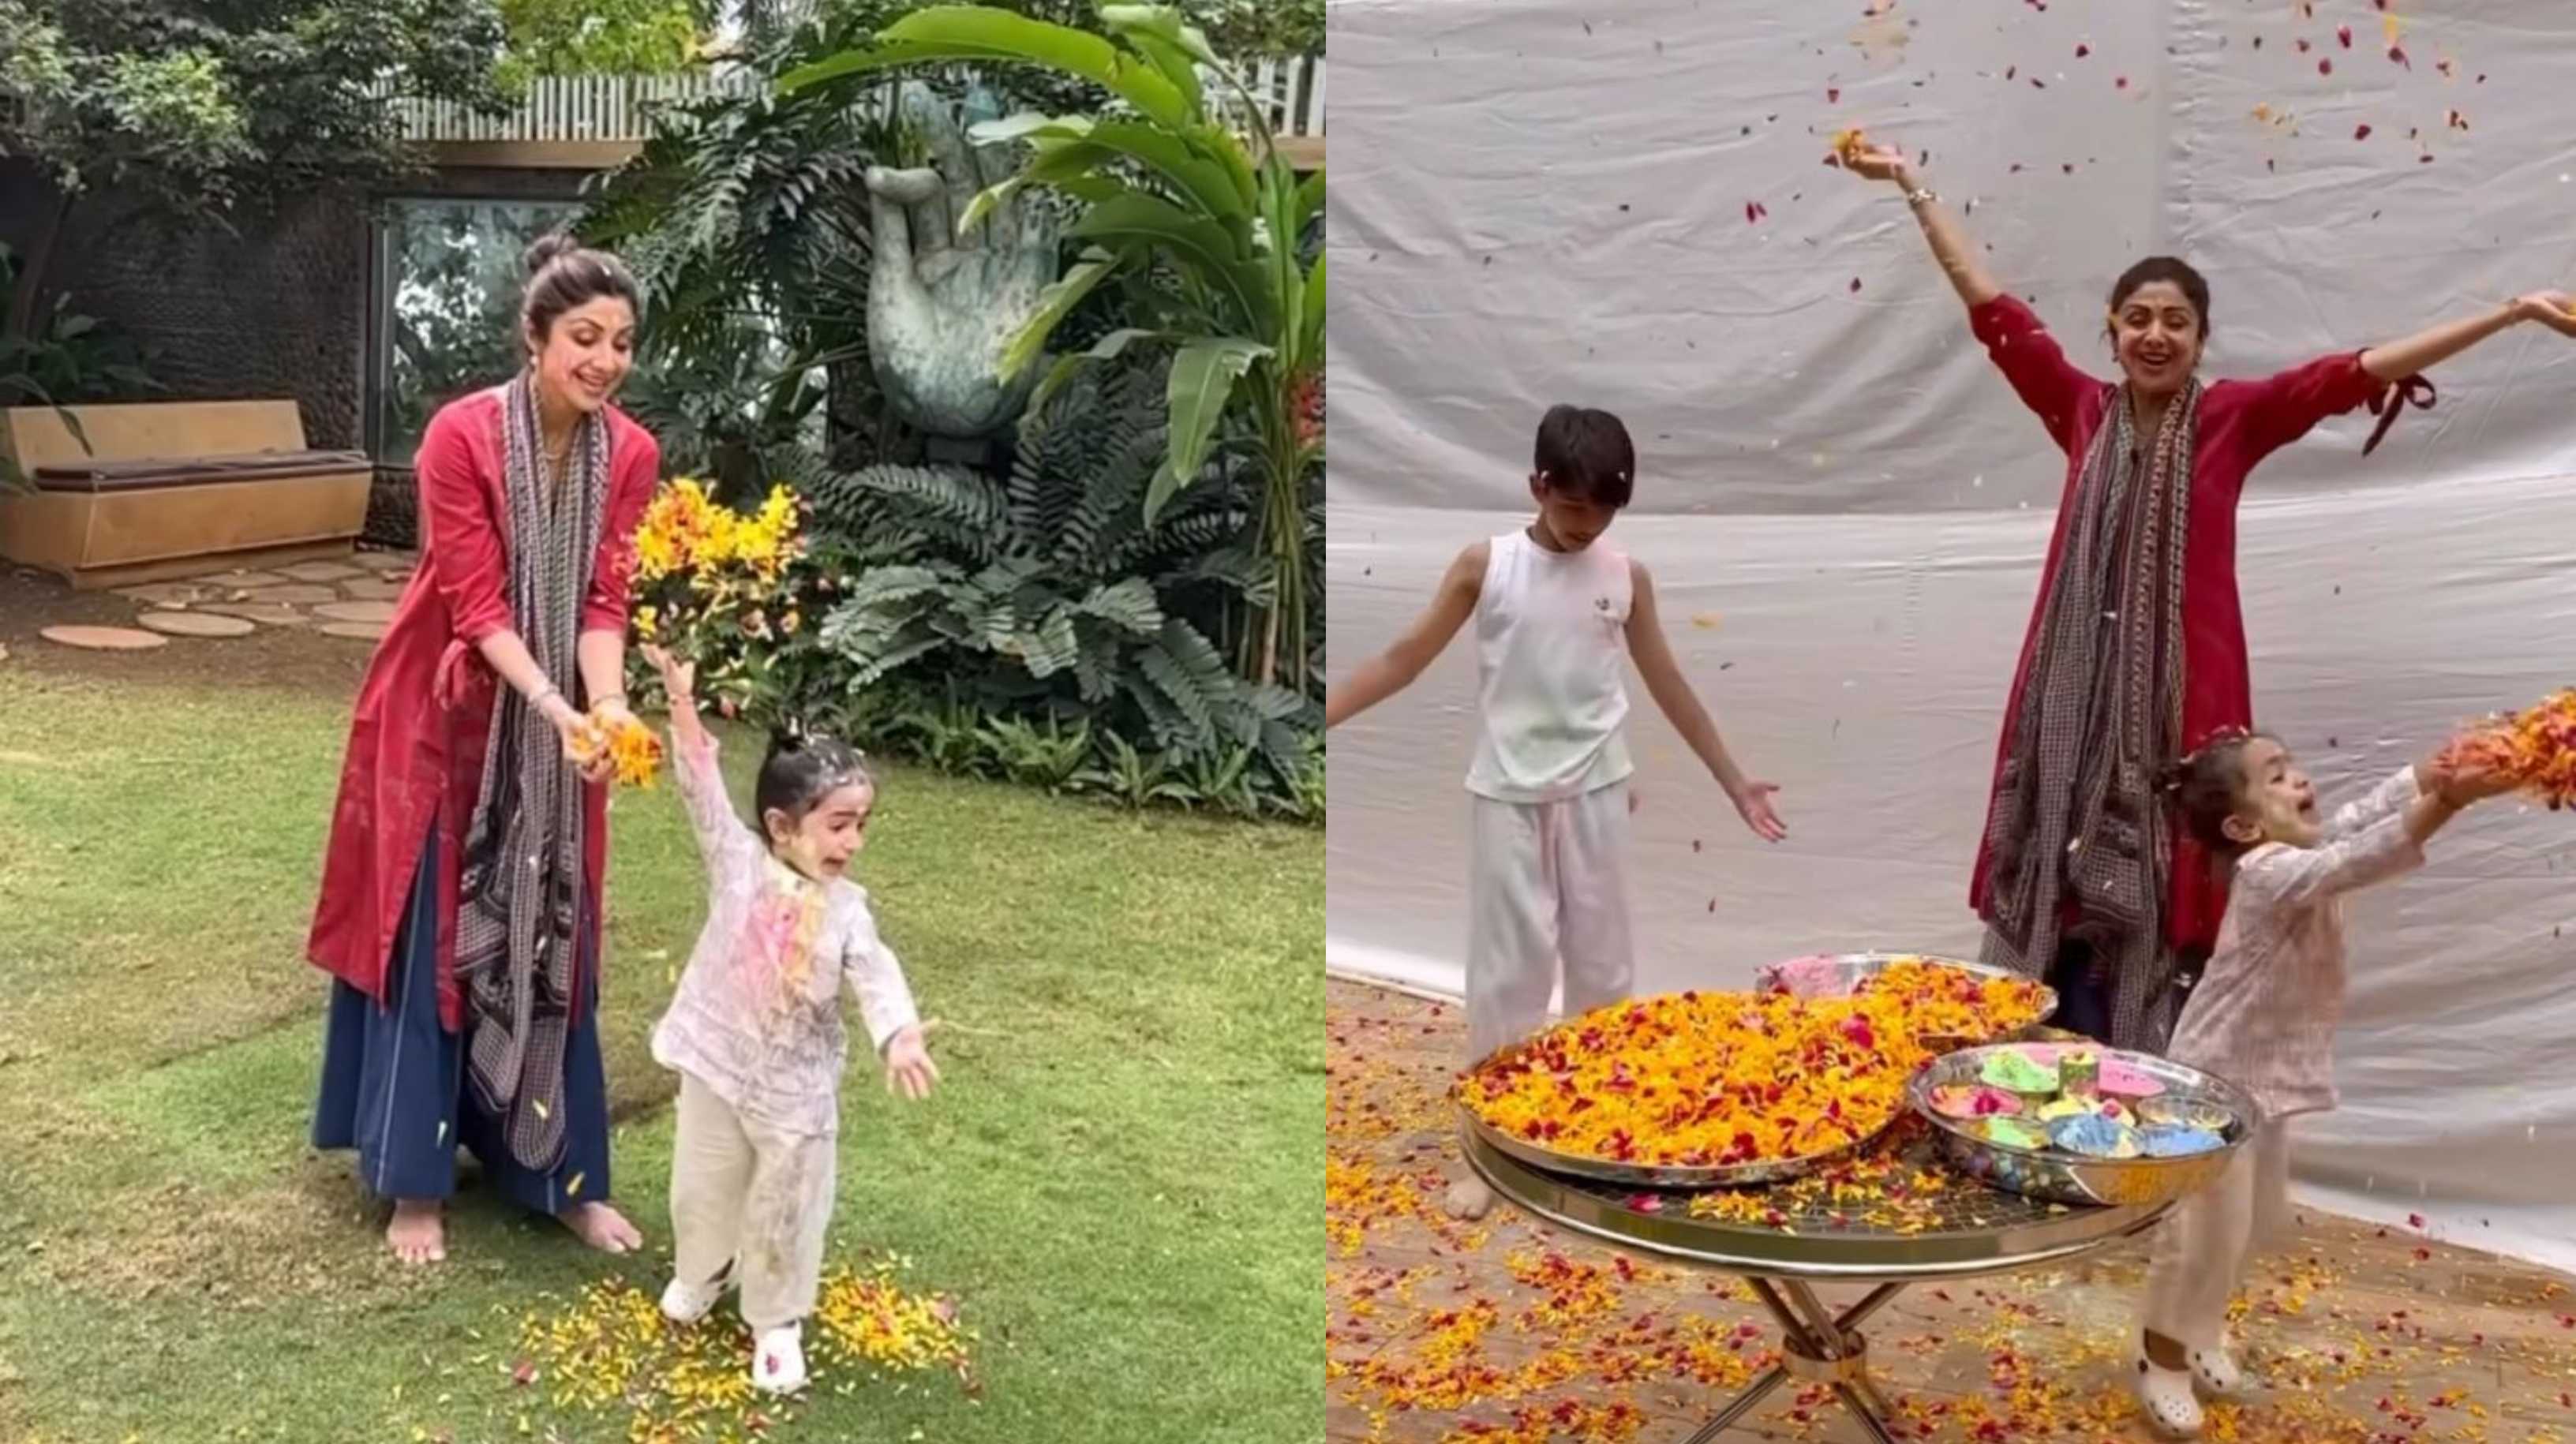 Shilpa Shetty shares a glimpse of her colourful Holi with Samisha and Viaan after Holika Dahan with Raj Kundra; watch